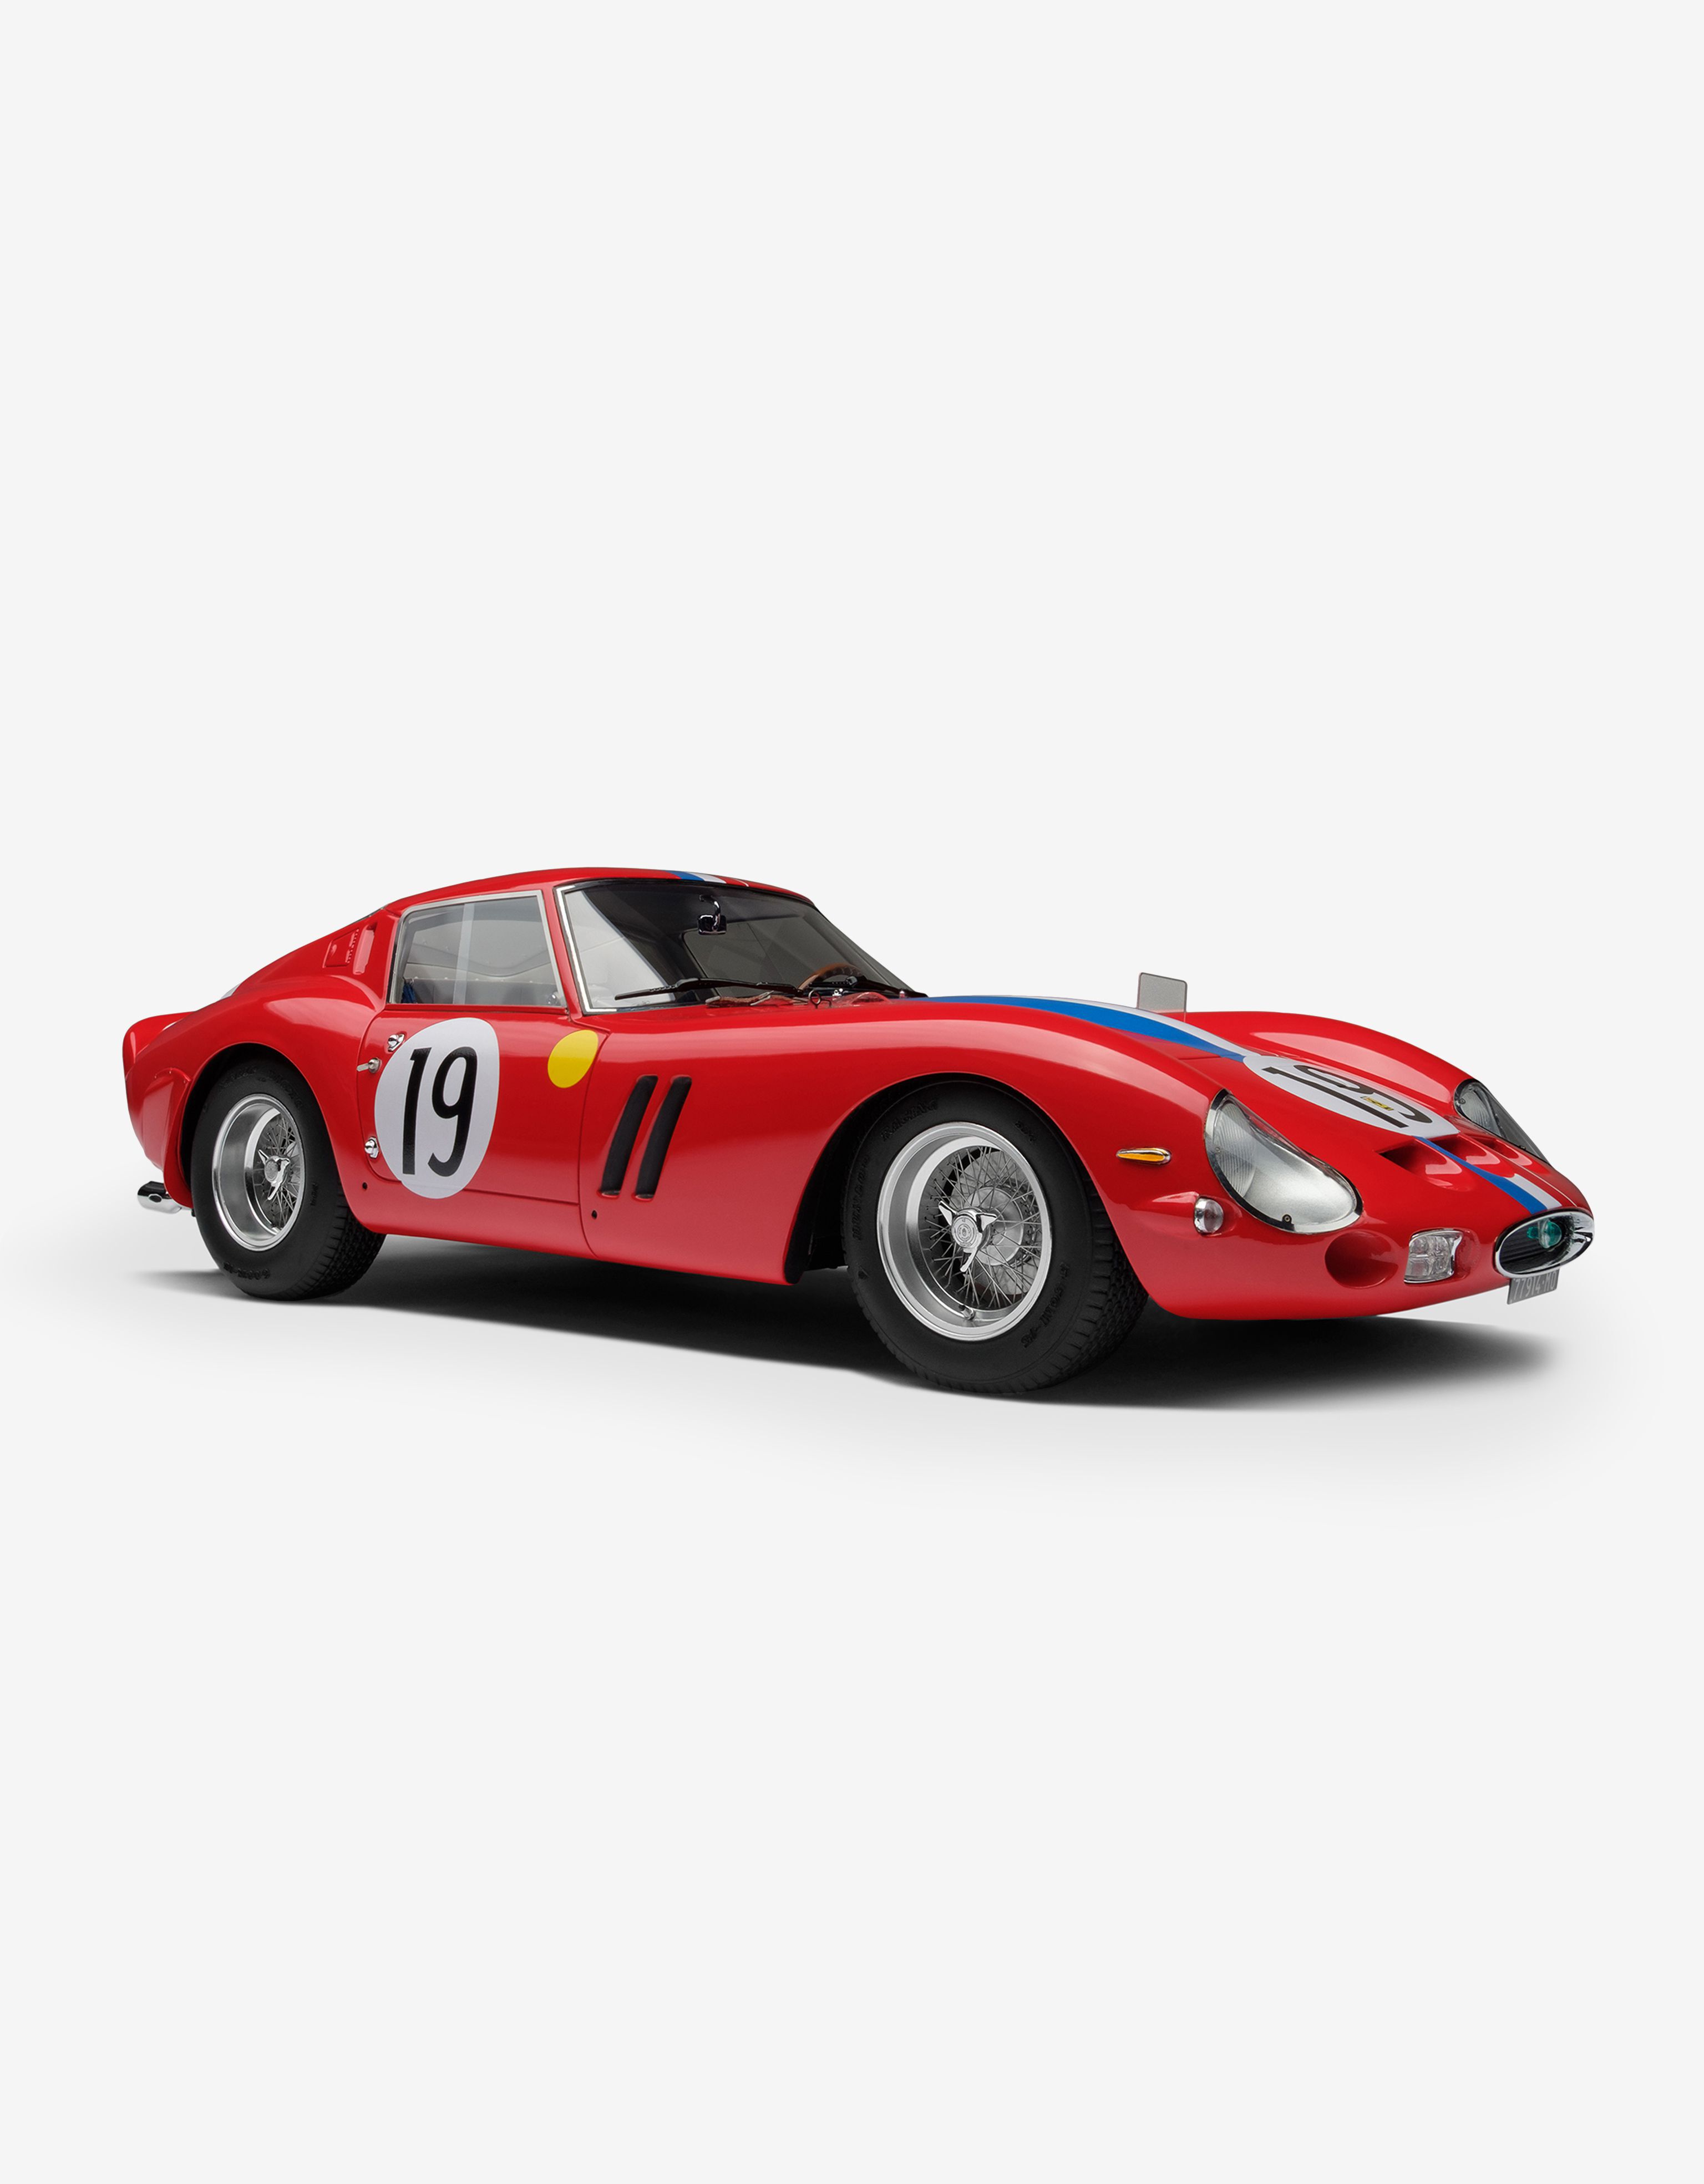 Ferrari Ferrari 250 GTO 1962 Le Mans model in 1:18 scale Rosso Corsa 20168f